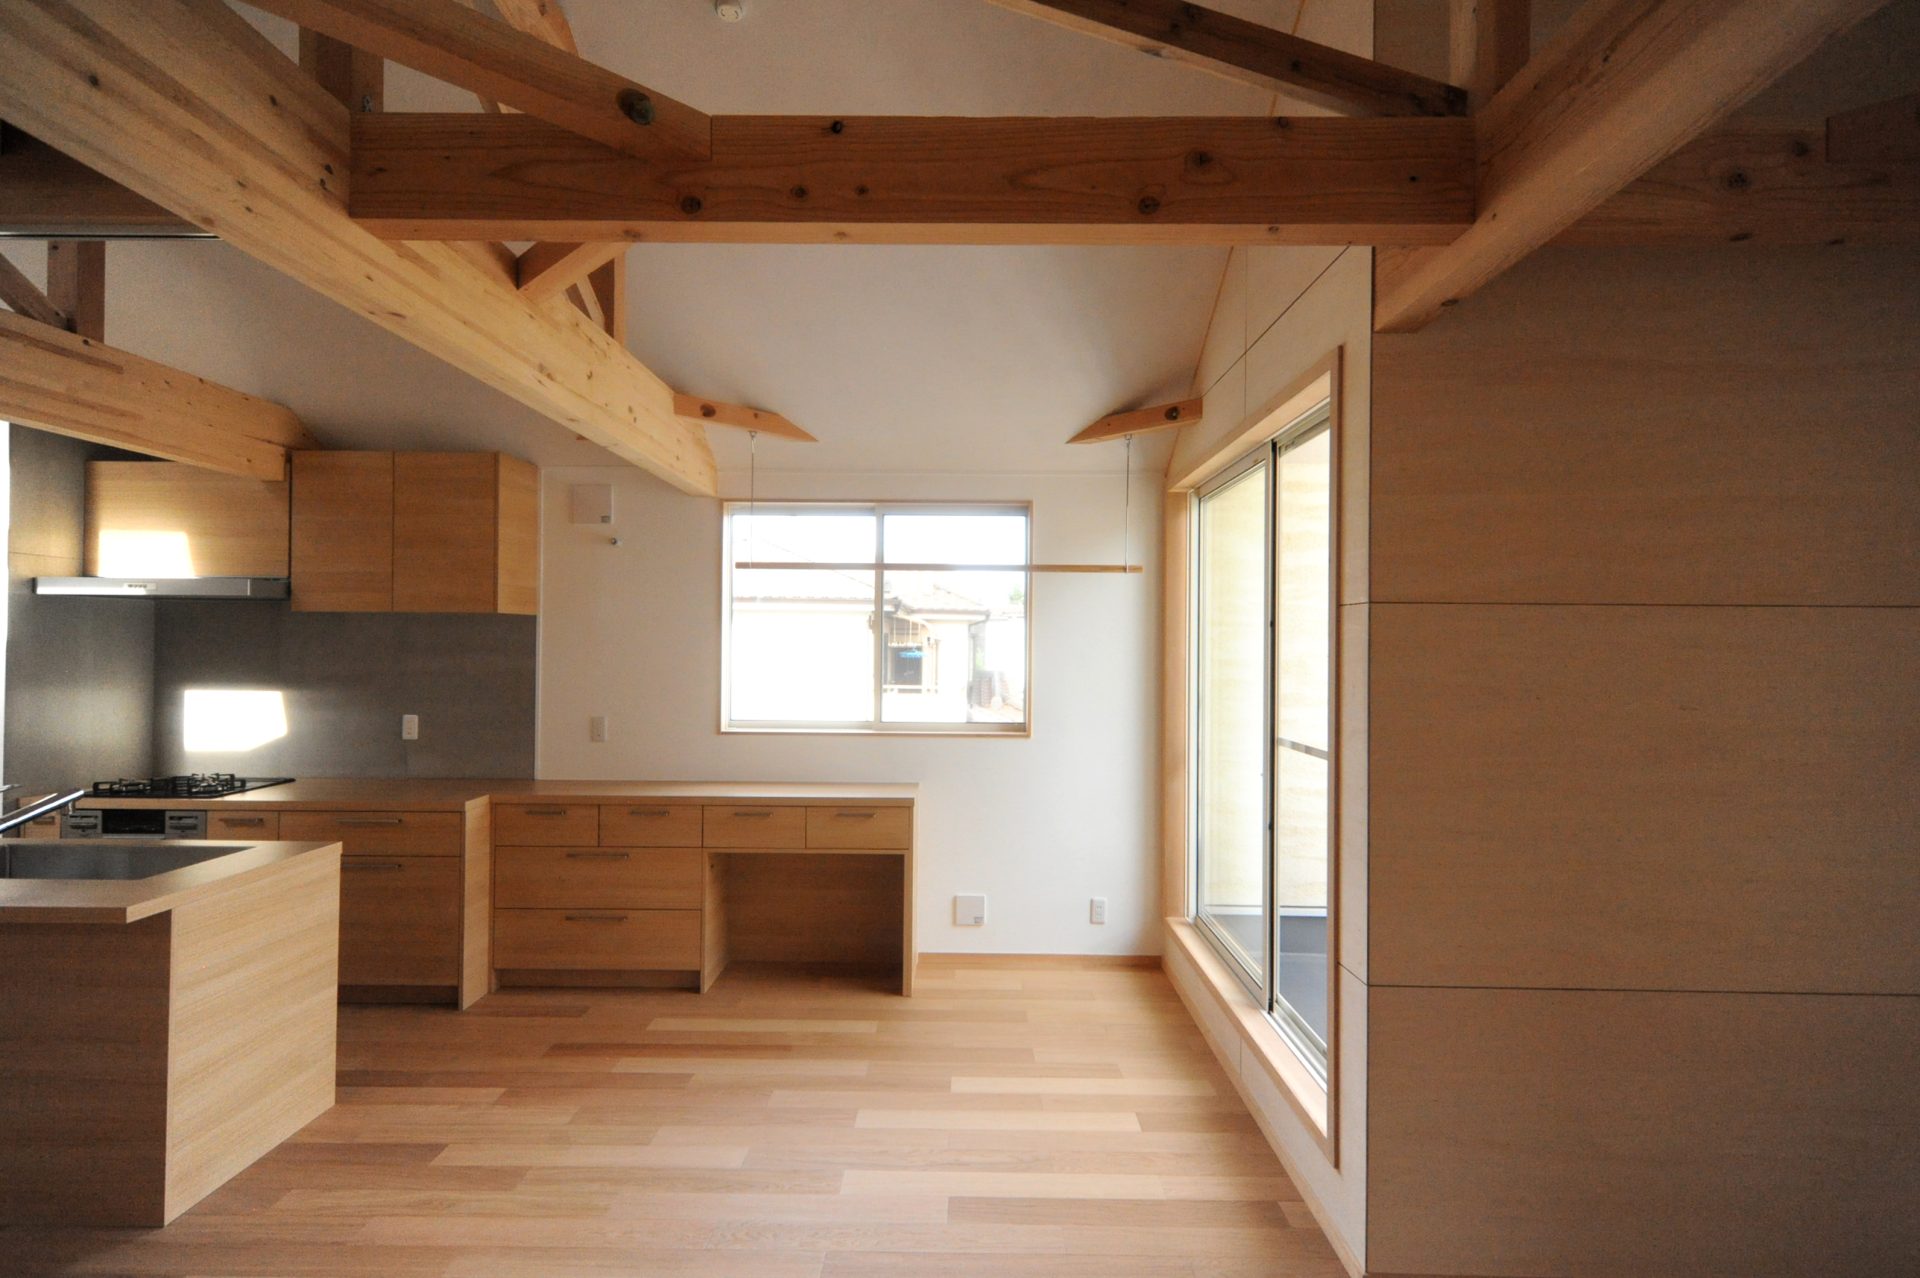 埼玉県川口市の新築住宅「Kawaguchi Hut」